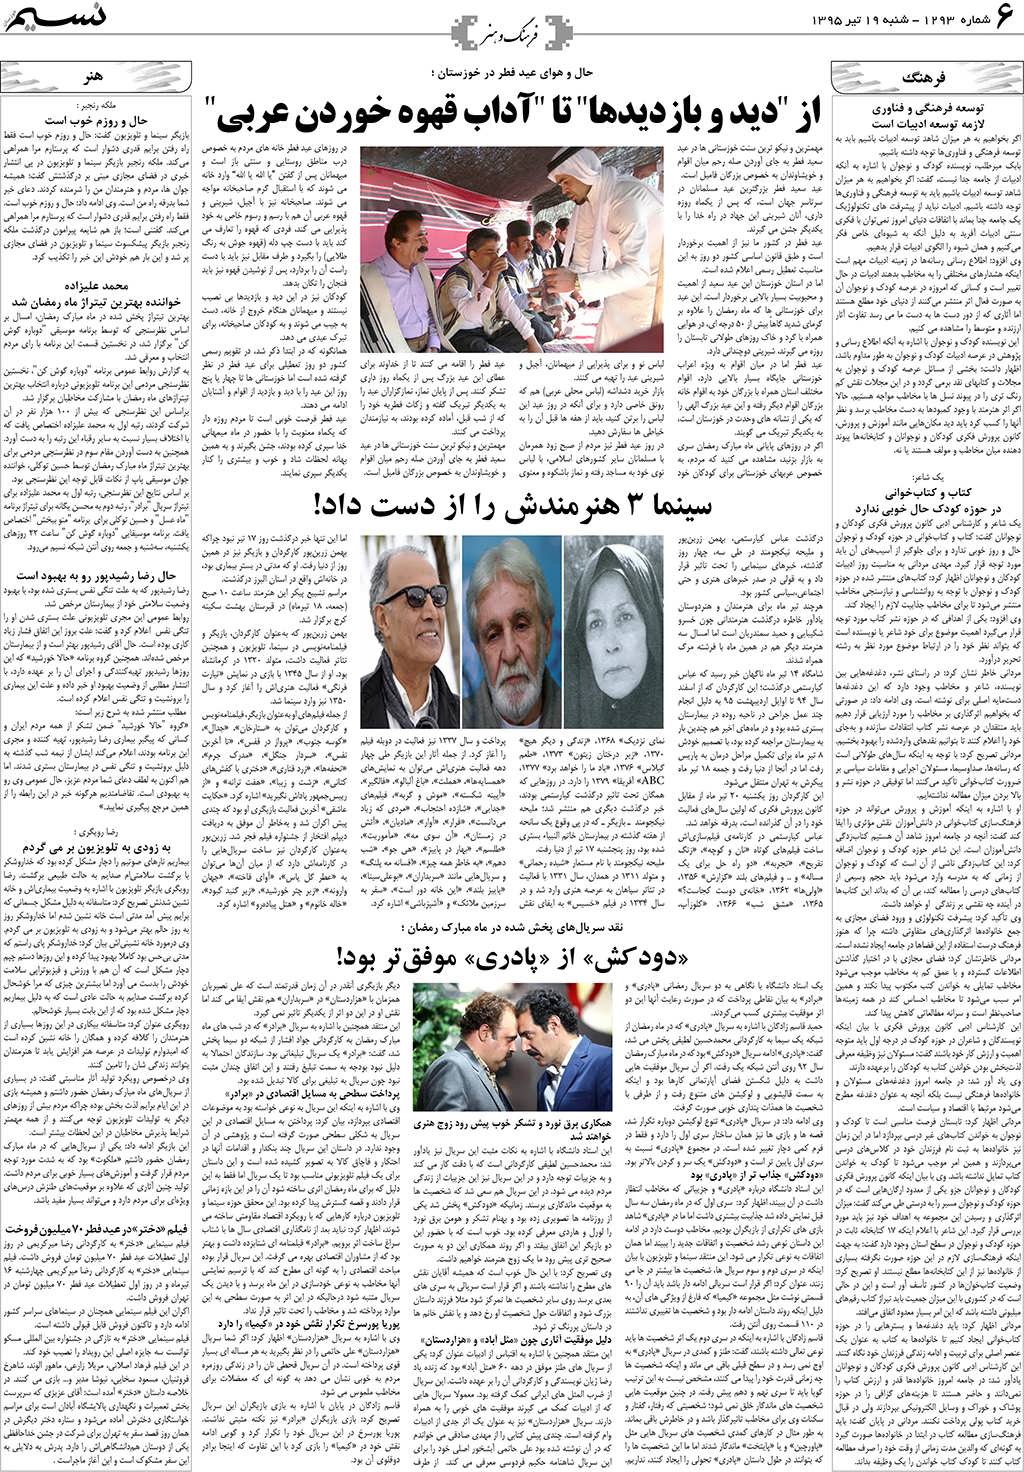 صفحه فرهنگ و هنر روزنامه نسیم شماره 1293